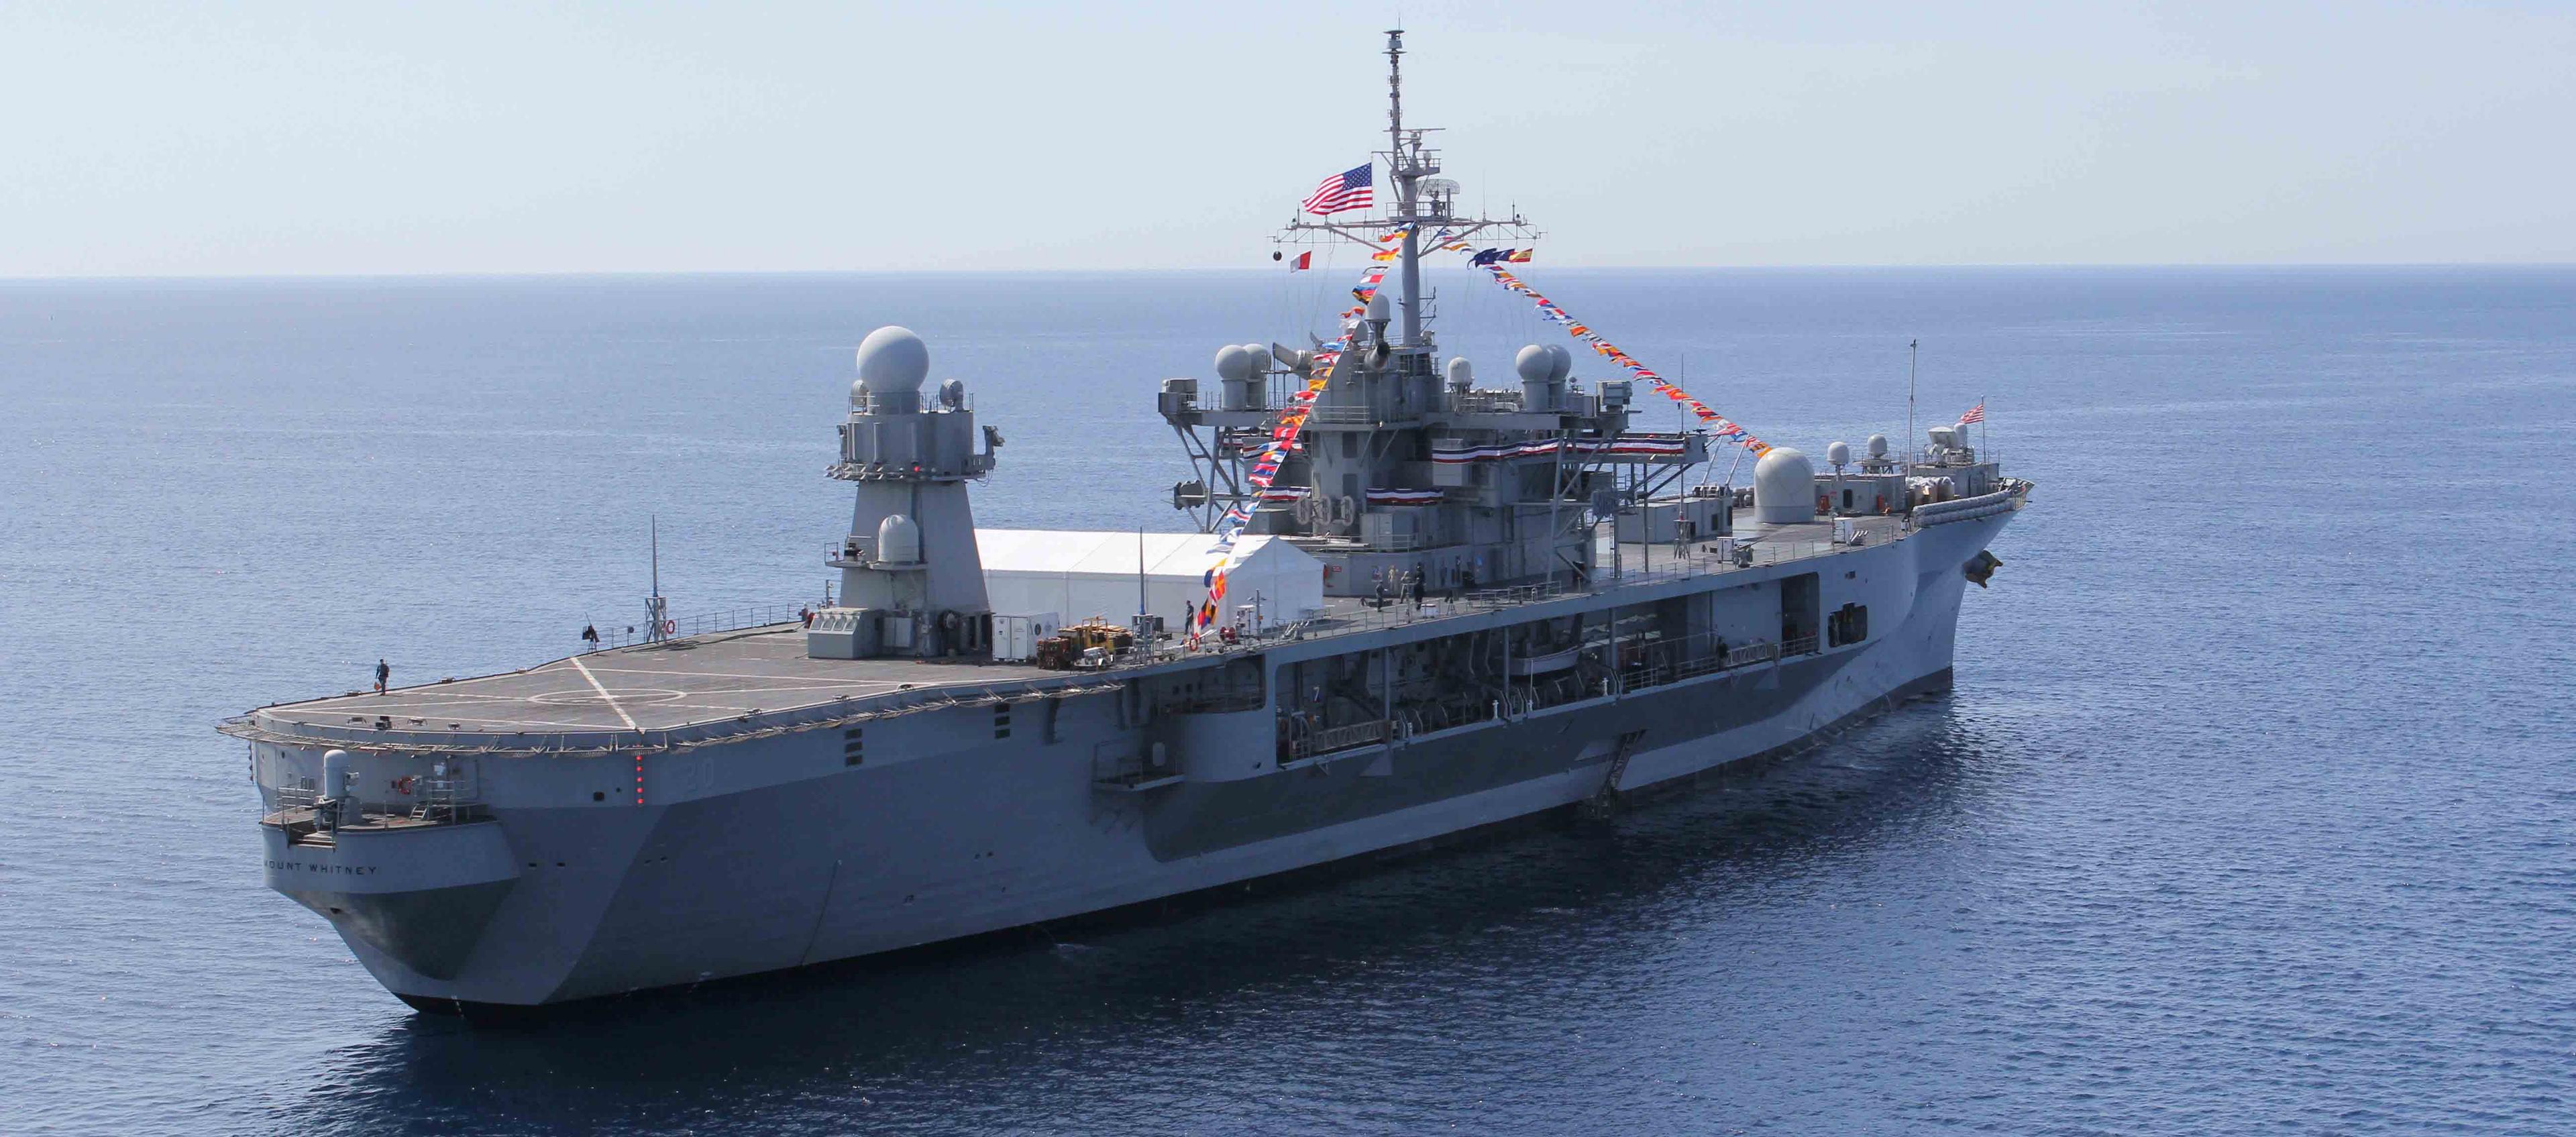 Američki admiralski brod "Mount Whitney" pridružuje se zajedničkoj misiji NATO-a